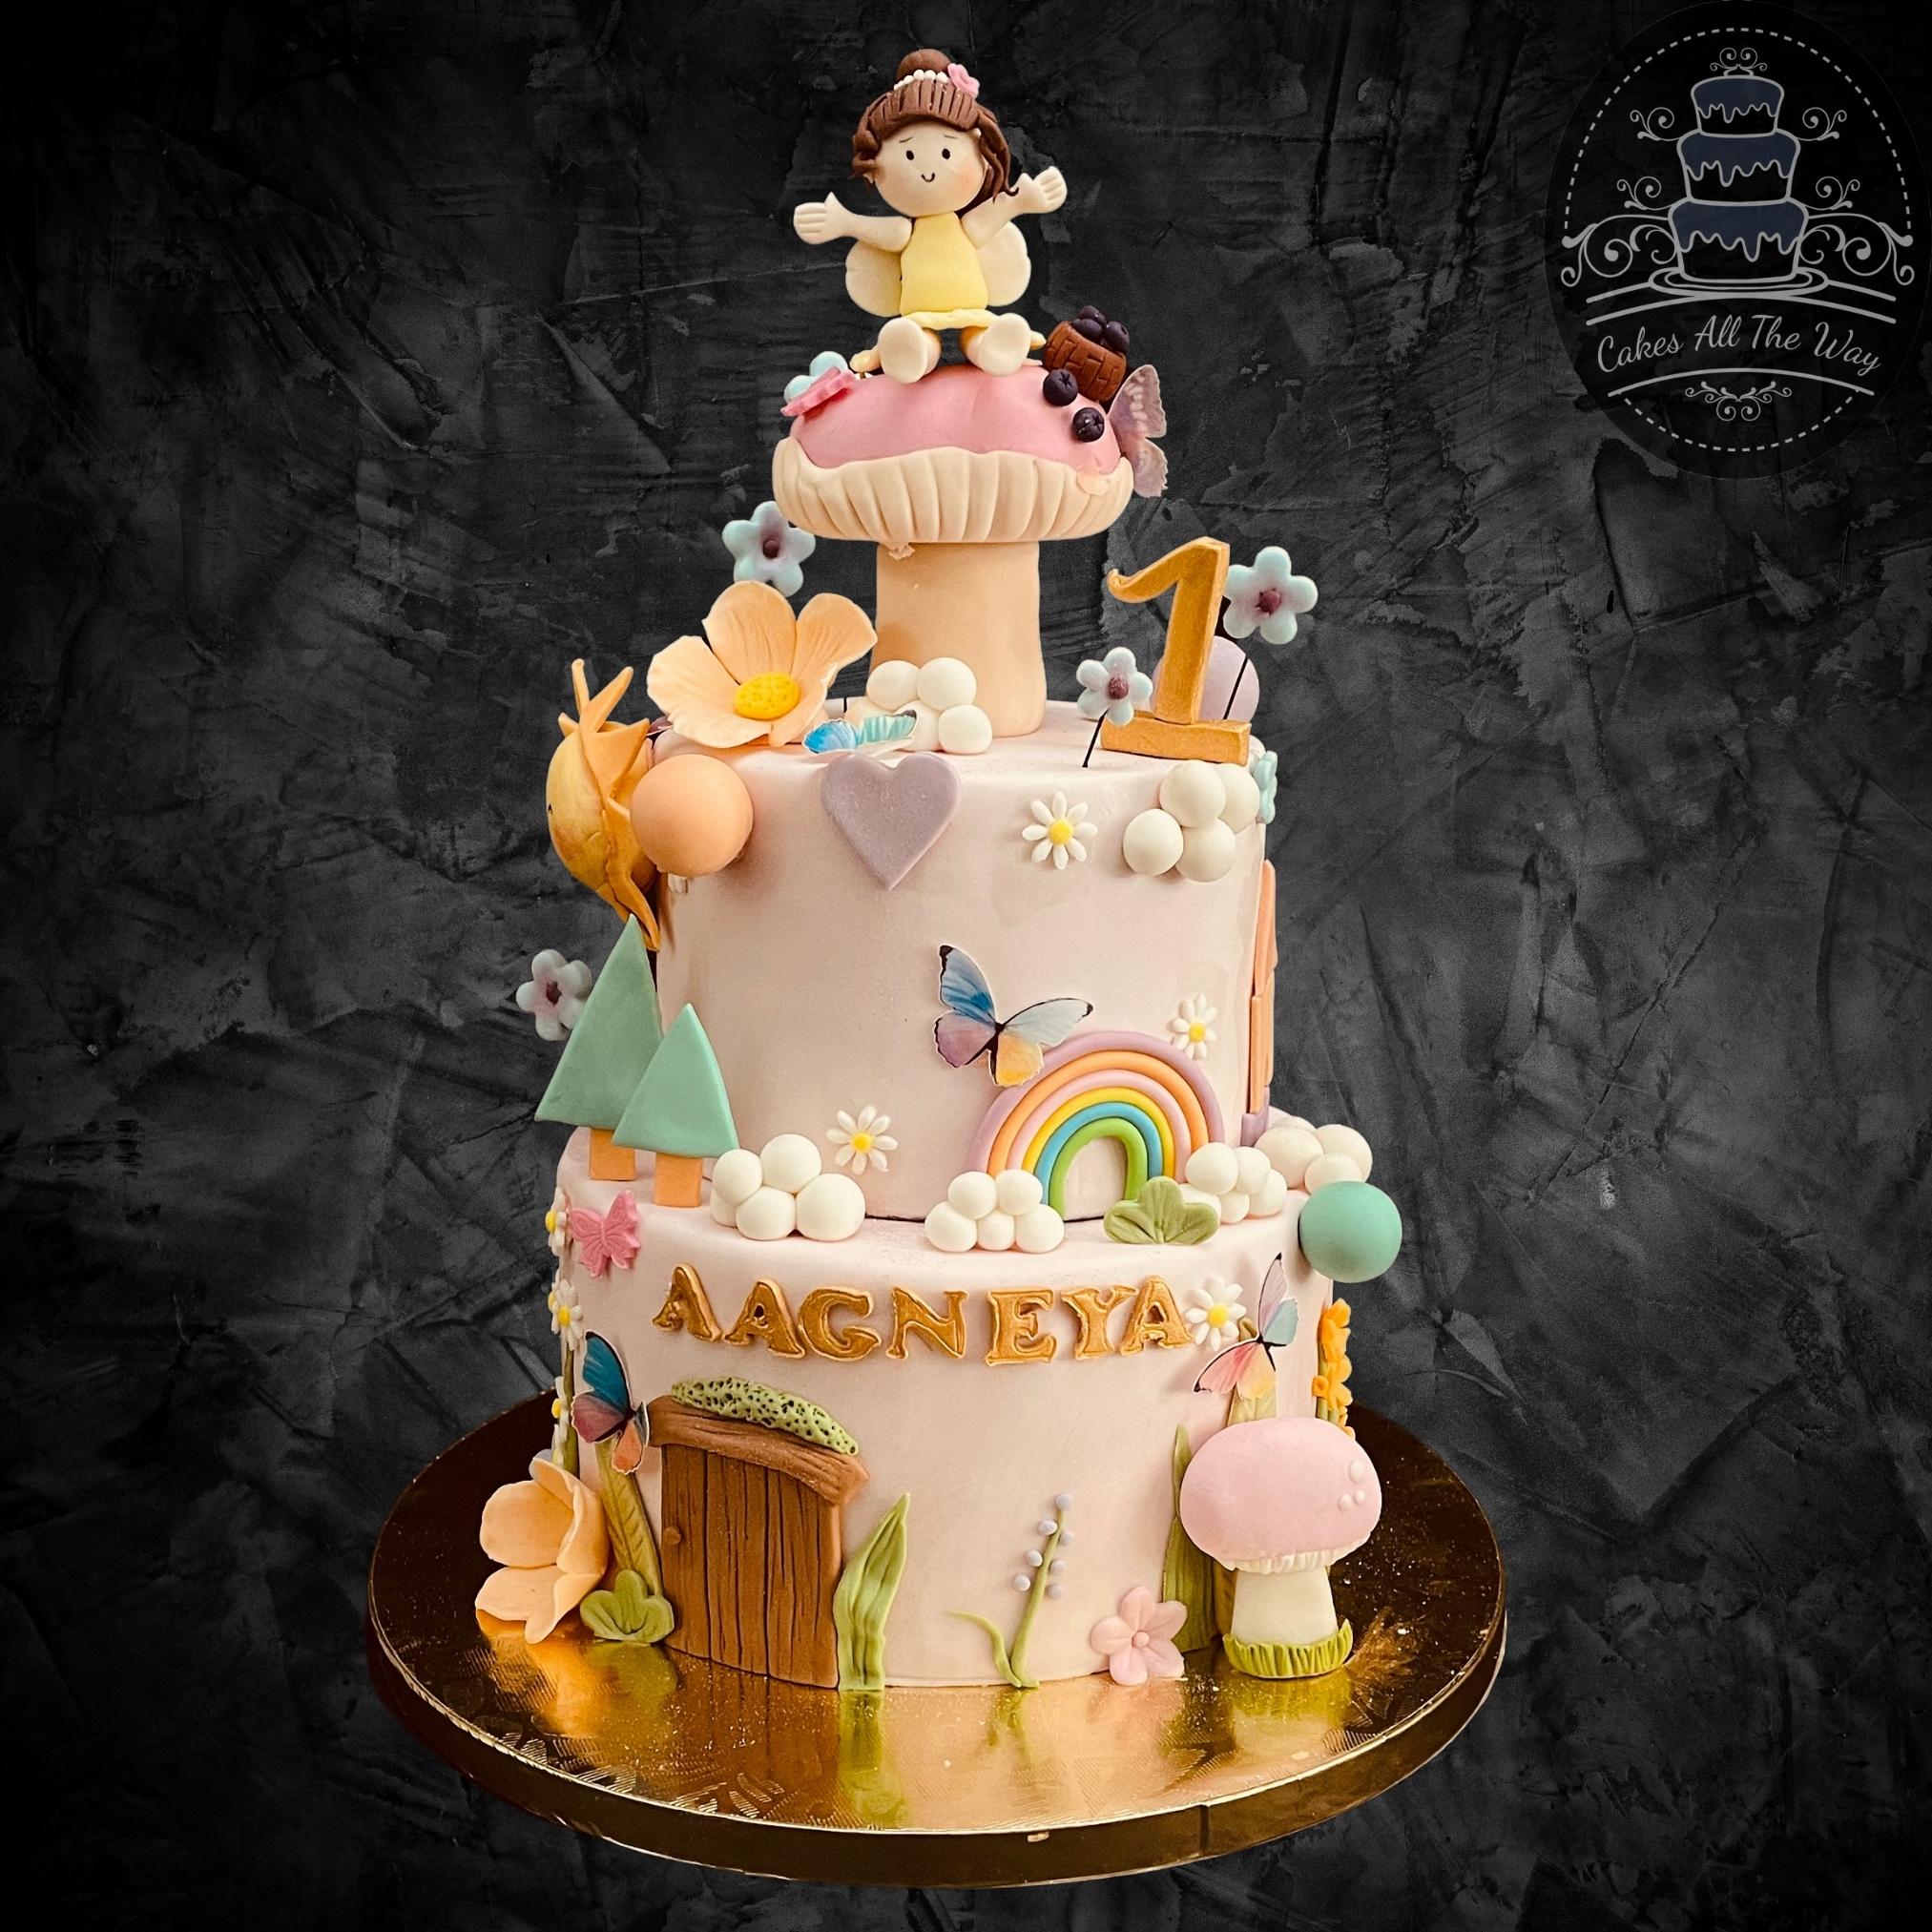 Annaprasana cake | Cake, Themed cakes, Baking